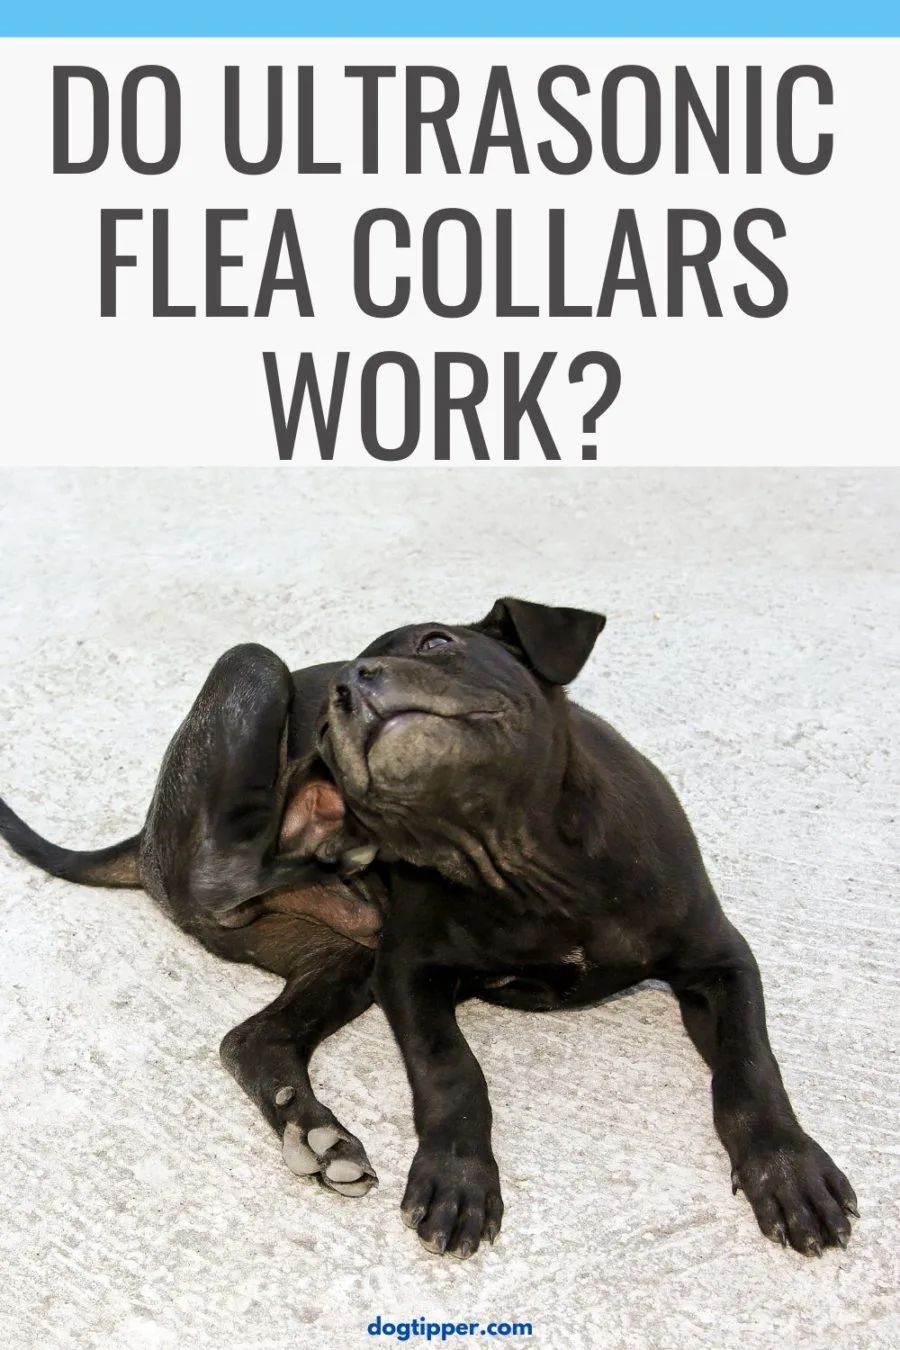 Do Ultrasonic Flea Collars Work?